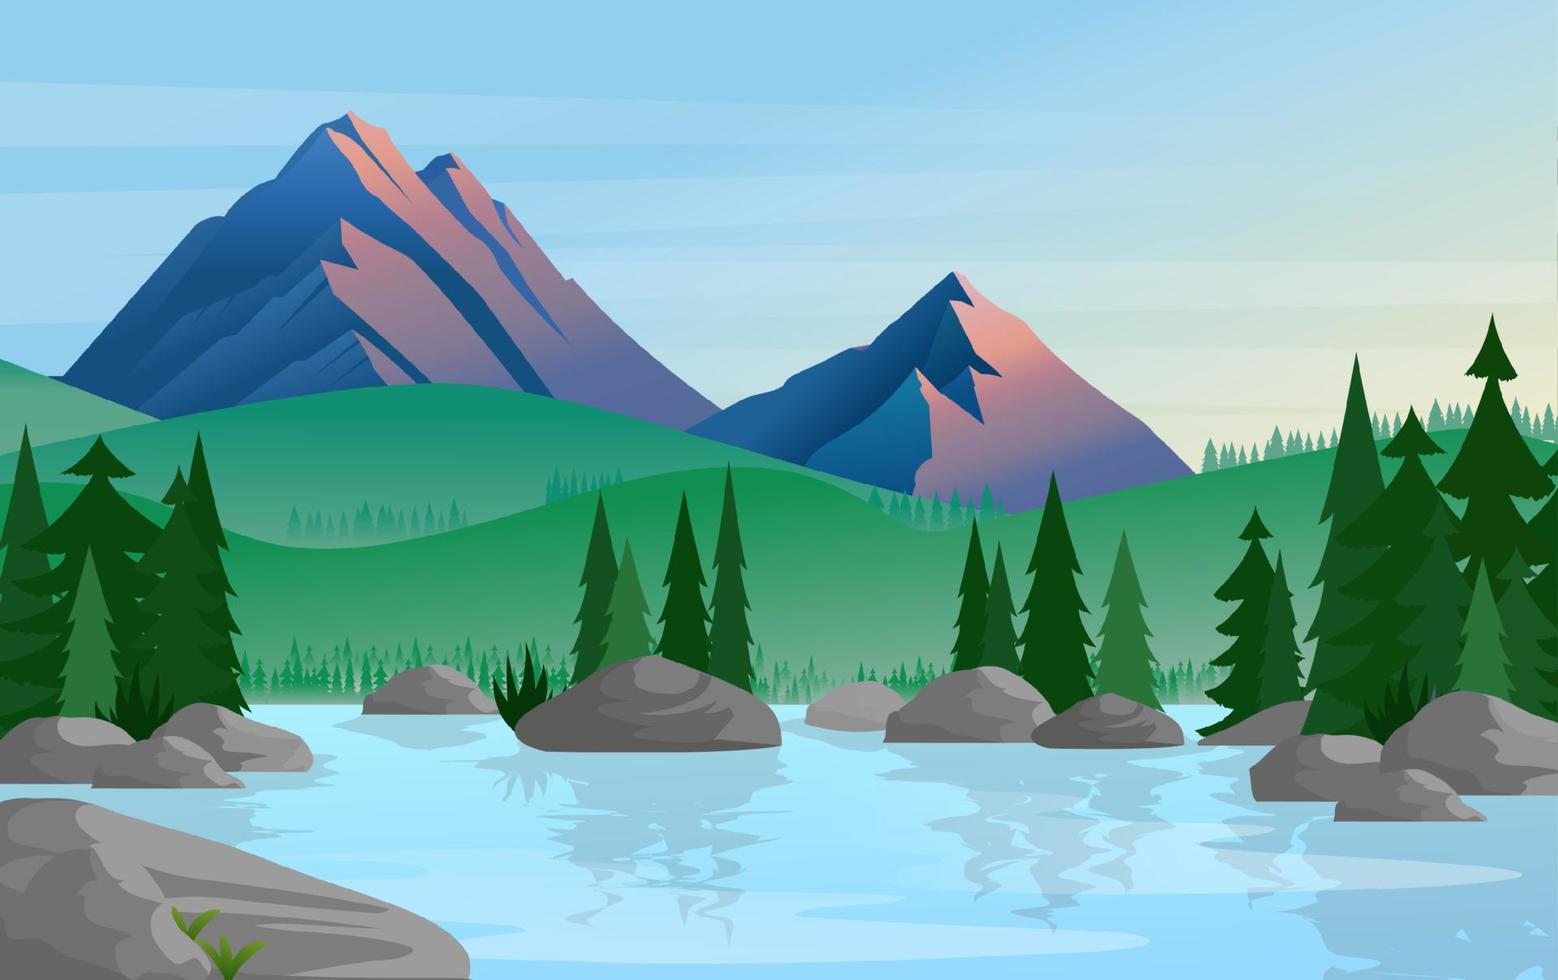 groupe de pins reflété dans une eau calme et calme avec des montagnes sur une illustration vectorielle de fond. illustration vectorielle montagne et lac vecteur